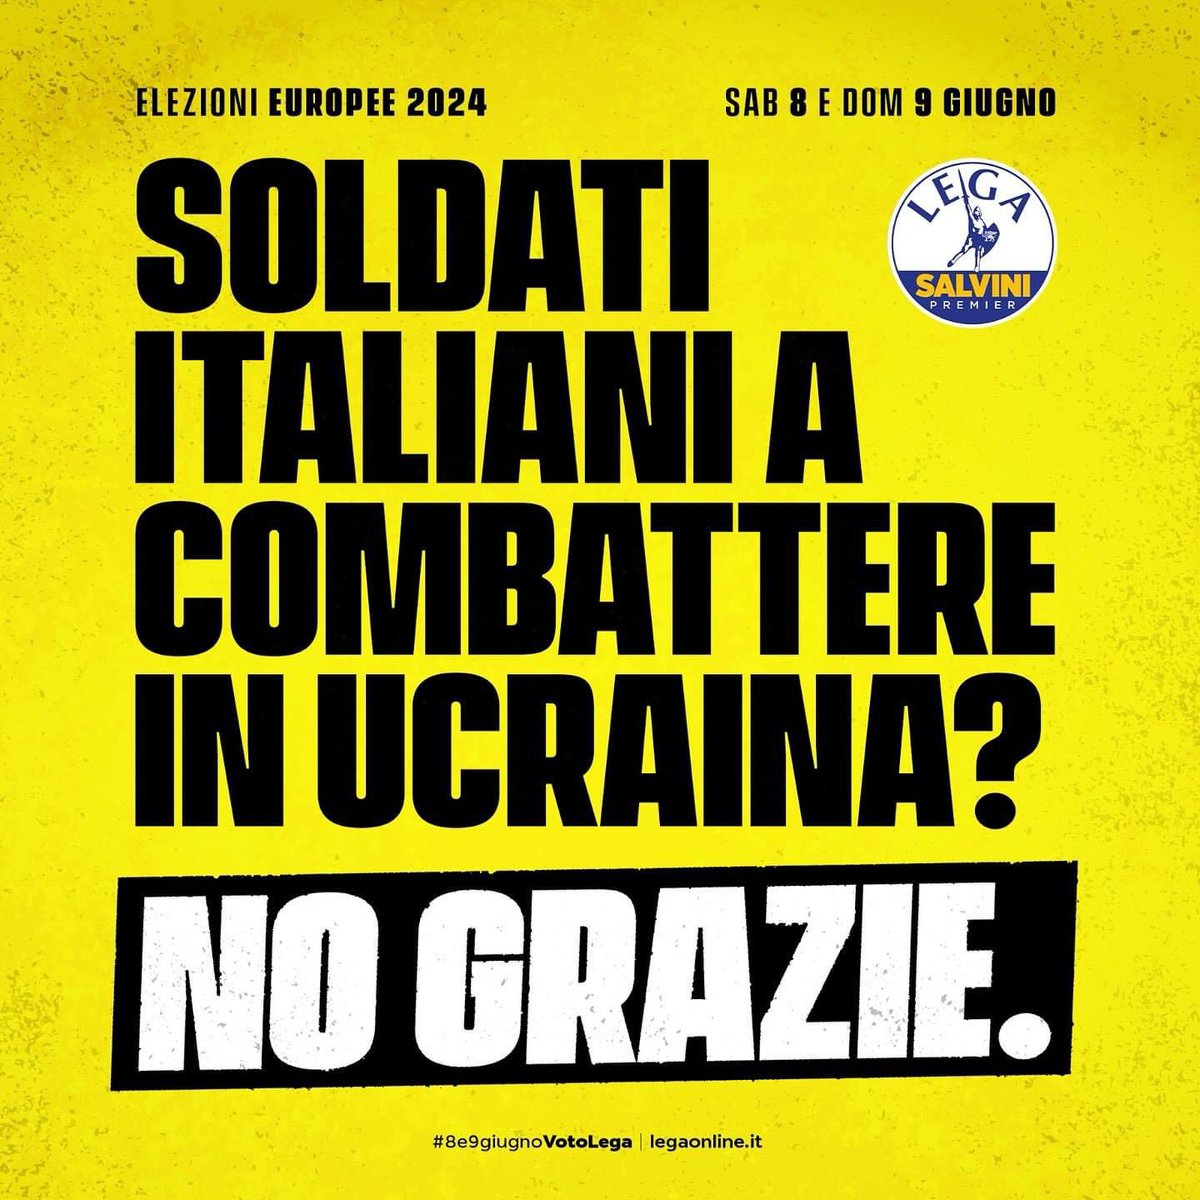 Messaggio chiaro e inequivocabile.

#Lega
#Salvini